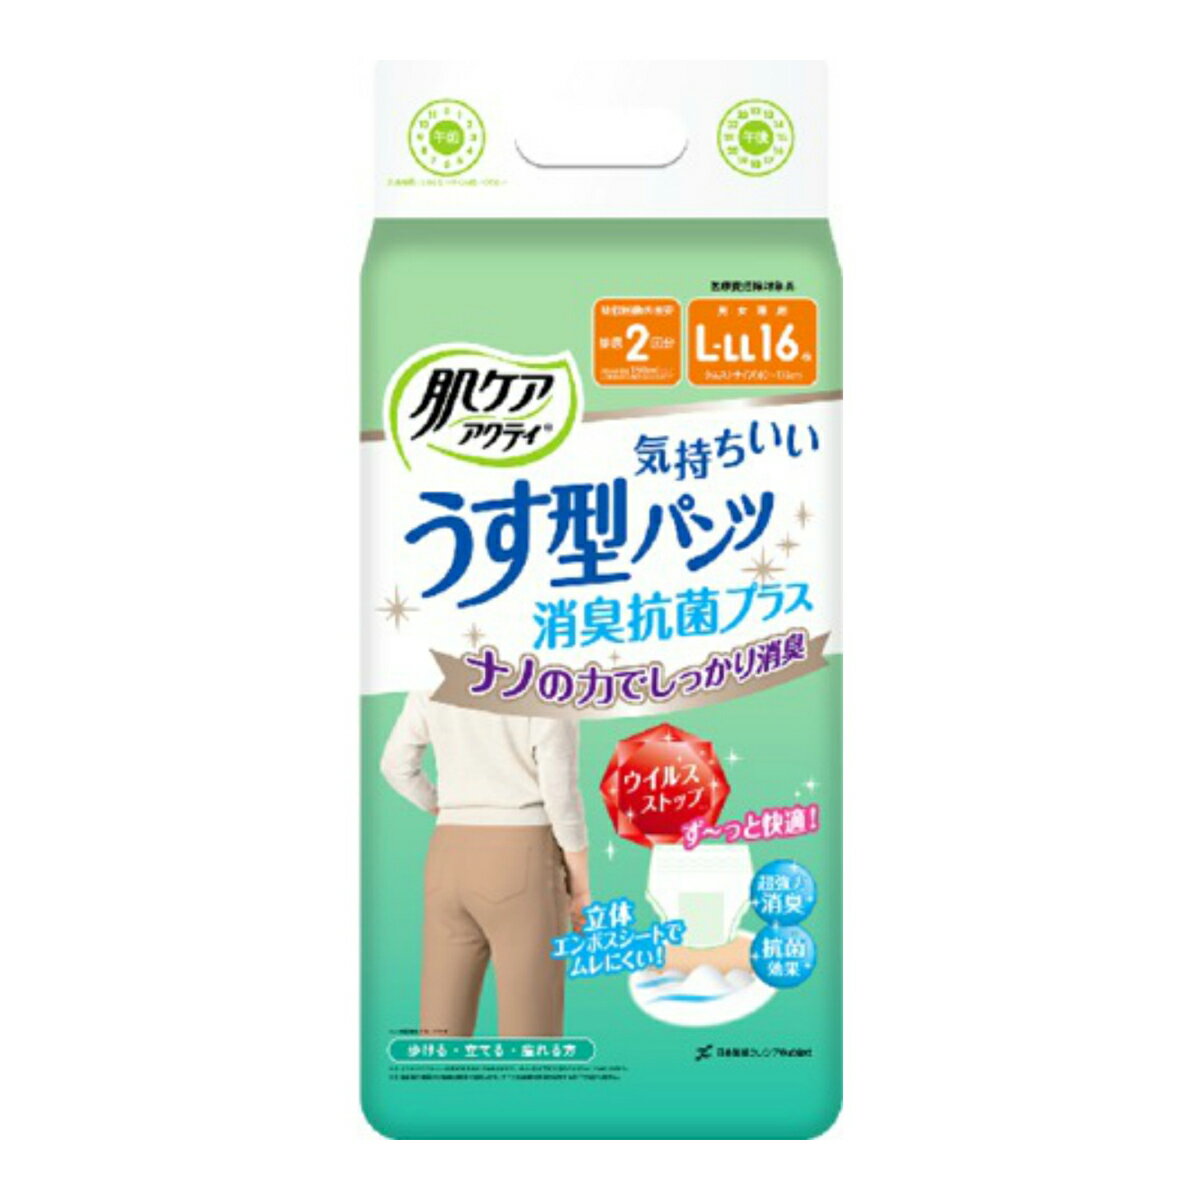 日本製紙 クレシア 肌ケア アクティ うす型 パンツ 消臭 抗菌プラス L-LL 16枚